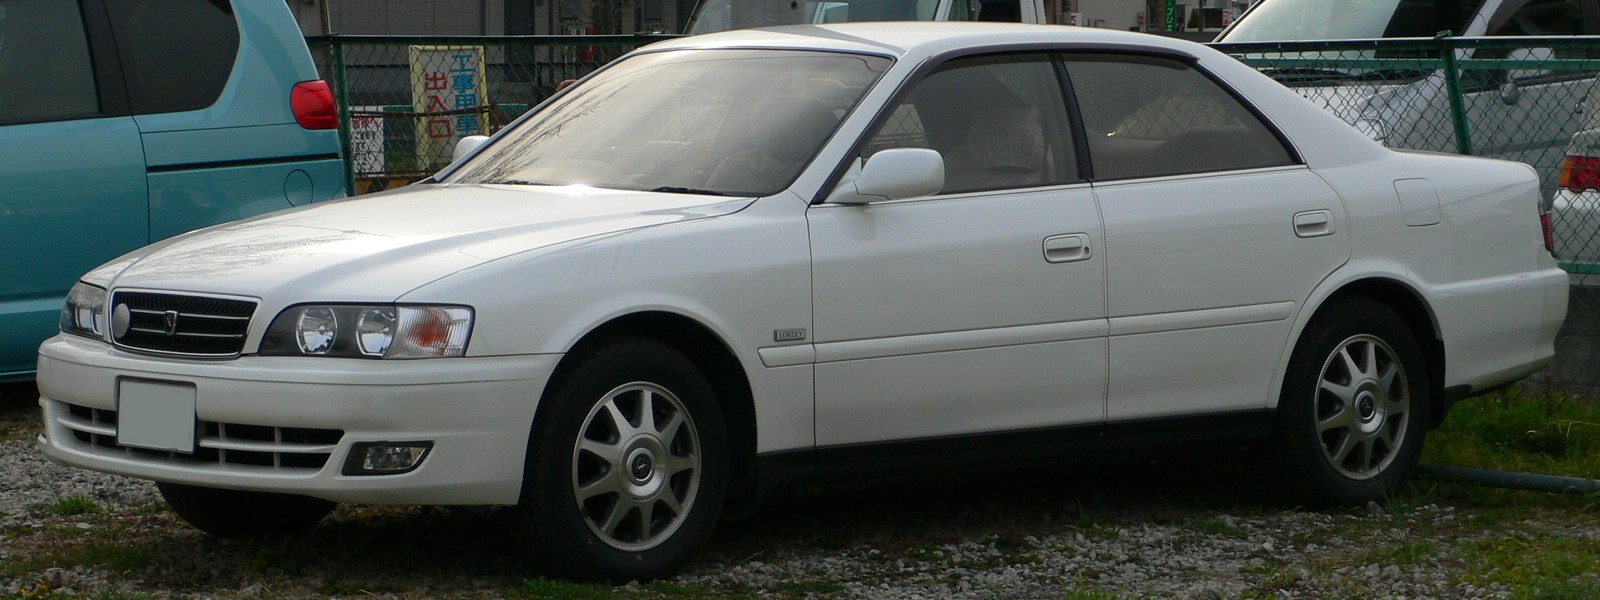 Toyota Chaser VI (X100) Restyling 1998 - 2001 Sedan #7